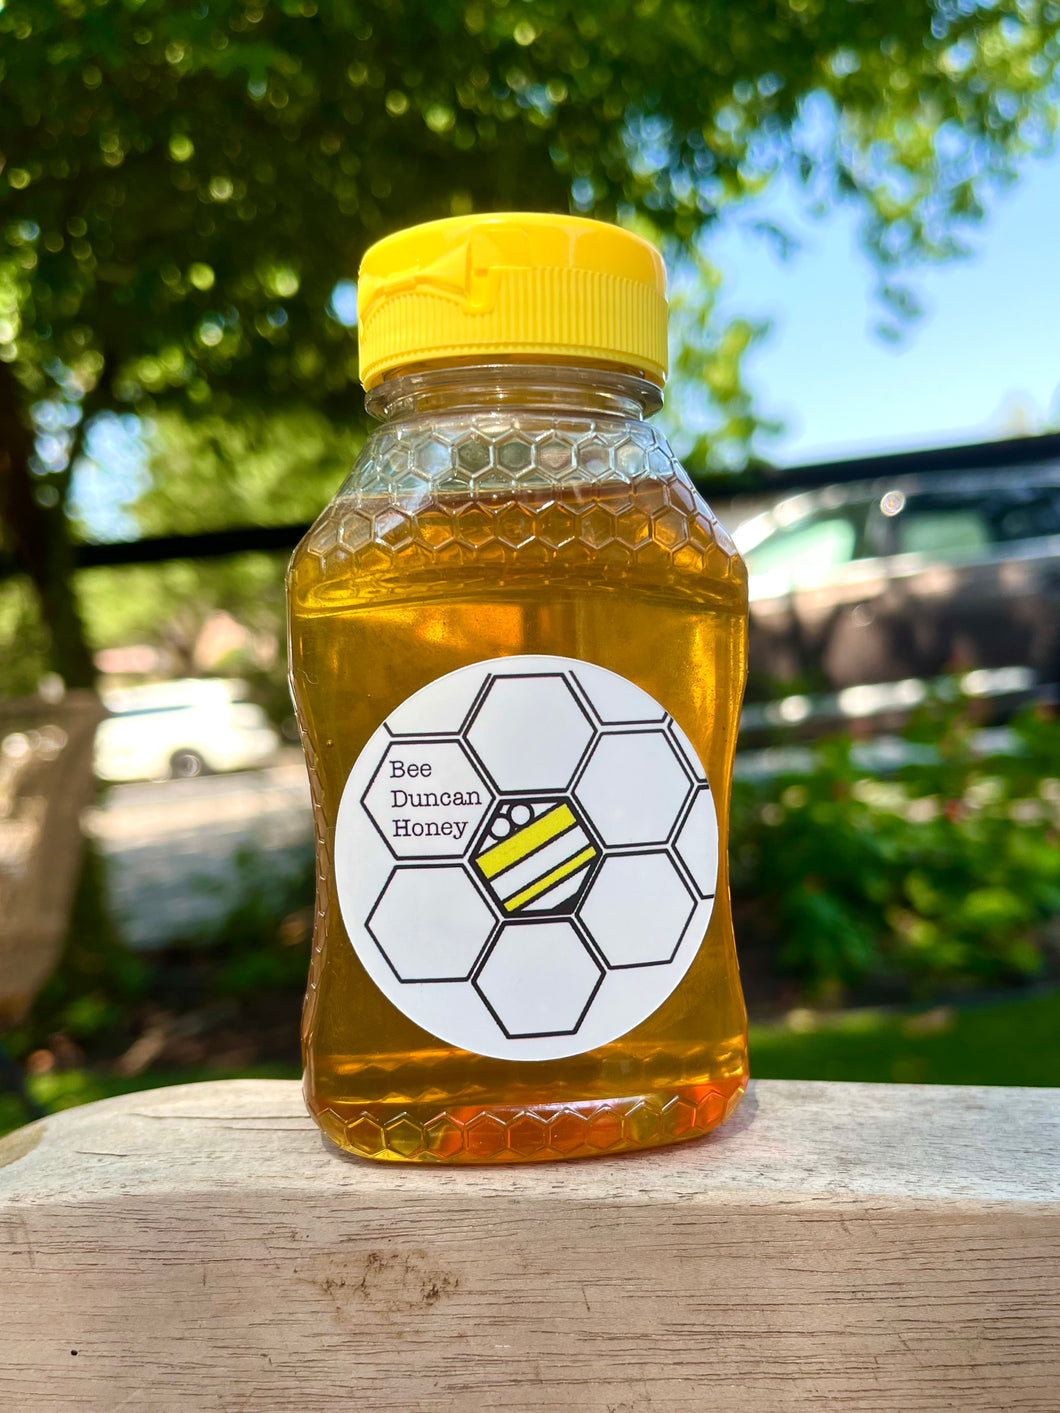 Bee Duncan Local Honey